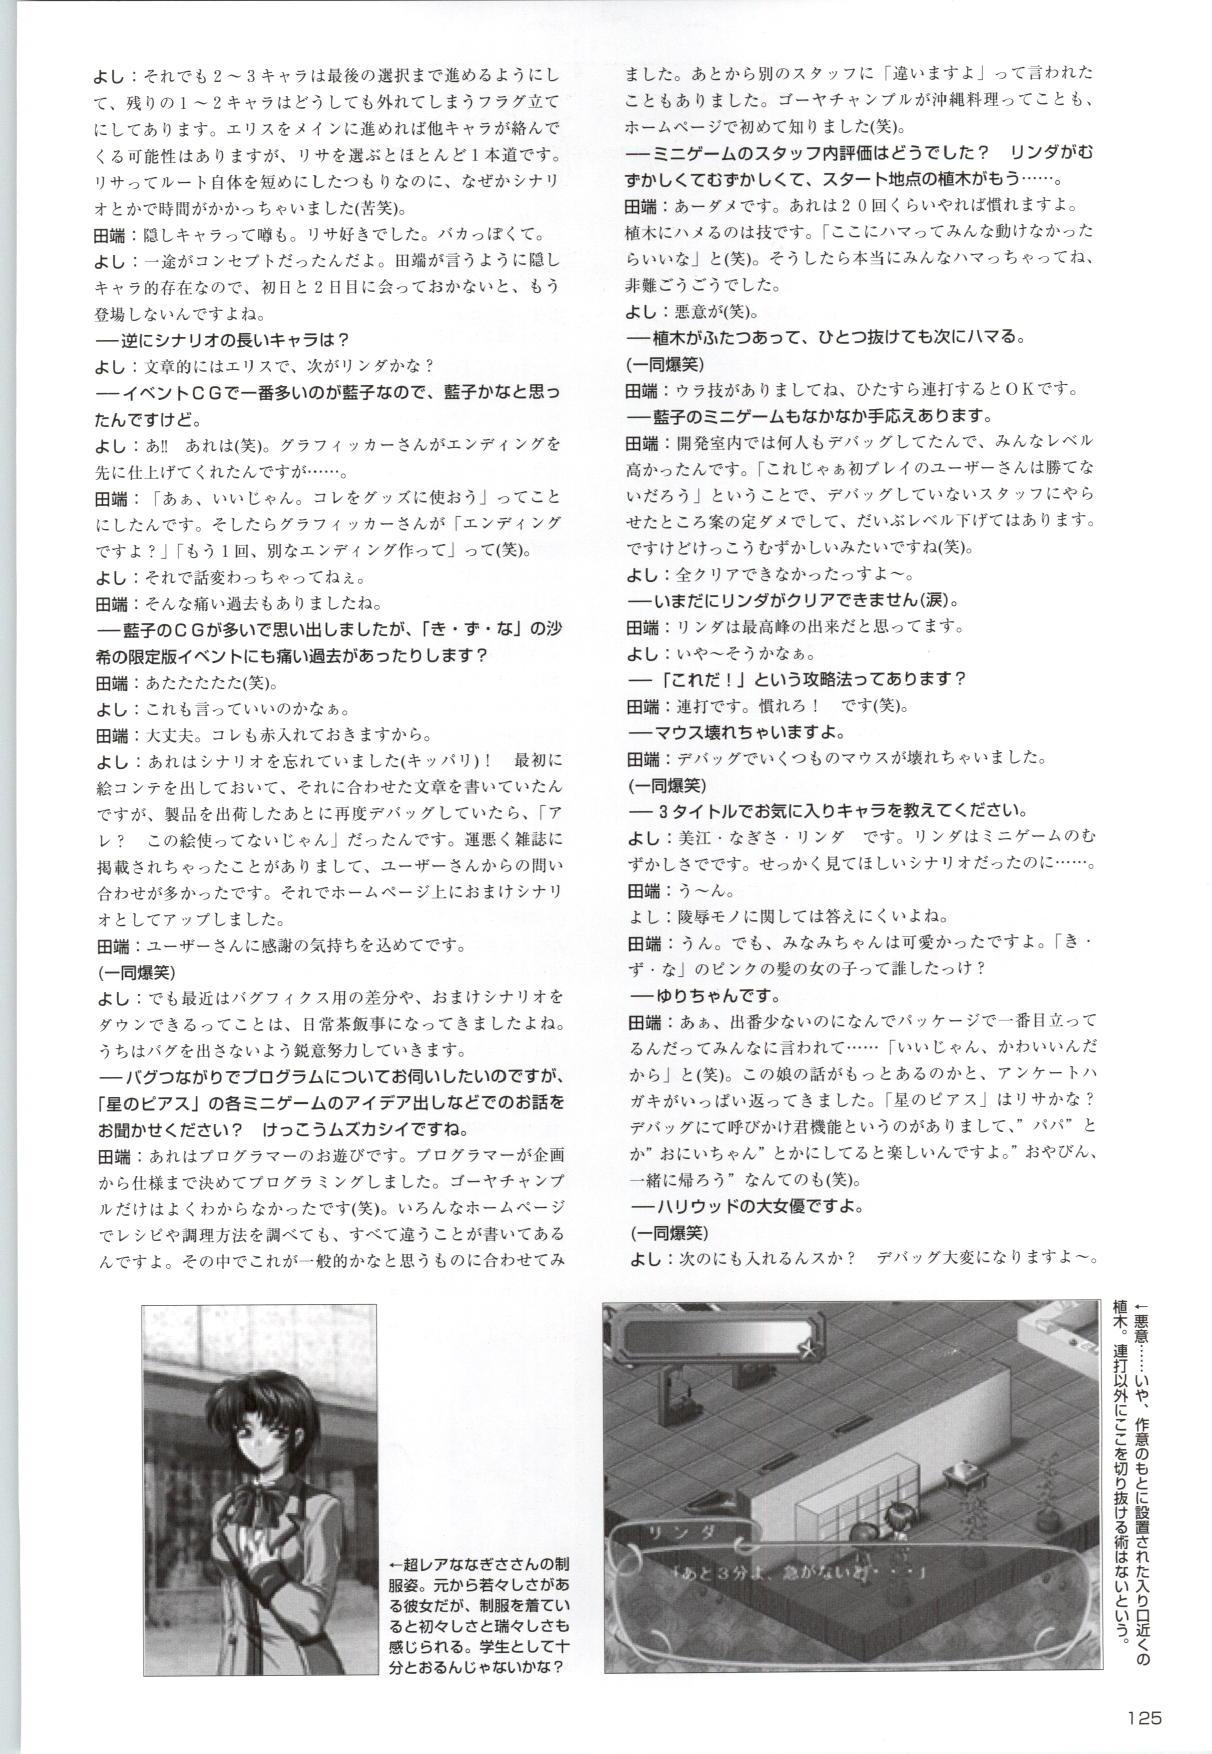 [Kinmedai Pink] ACTRESS Collection Kizuna + Seduce ~Yuuwaku~ + Hoshi no Pierce Computer Graphics & Original Pictures 125